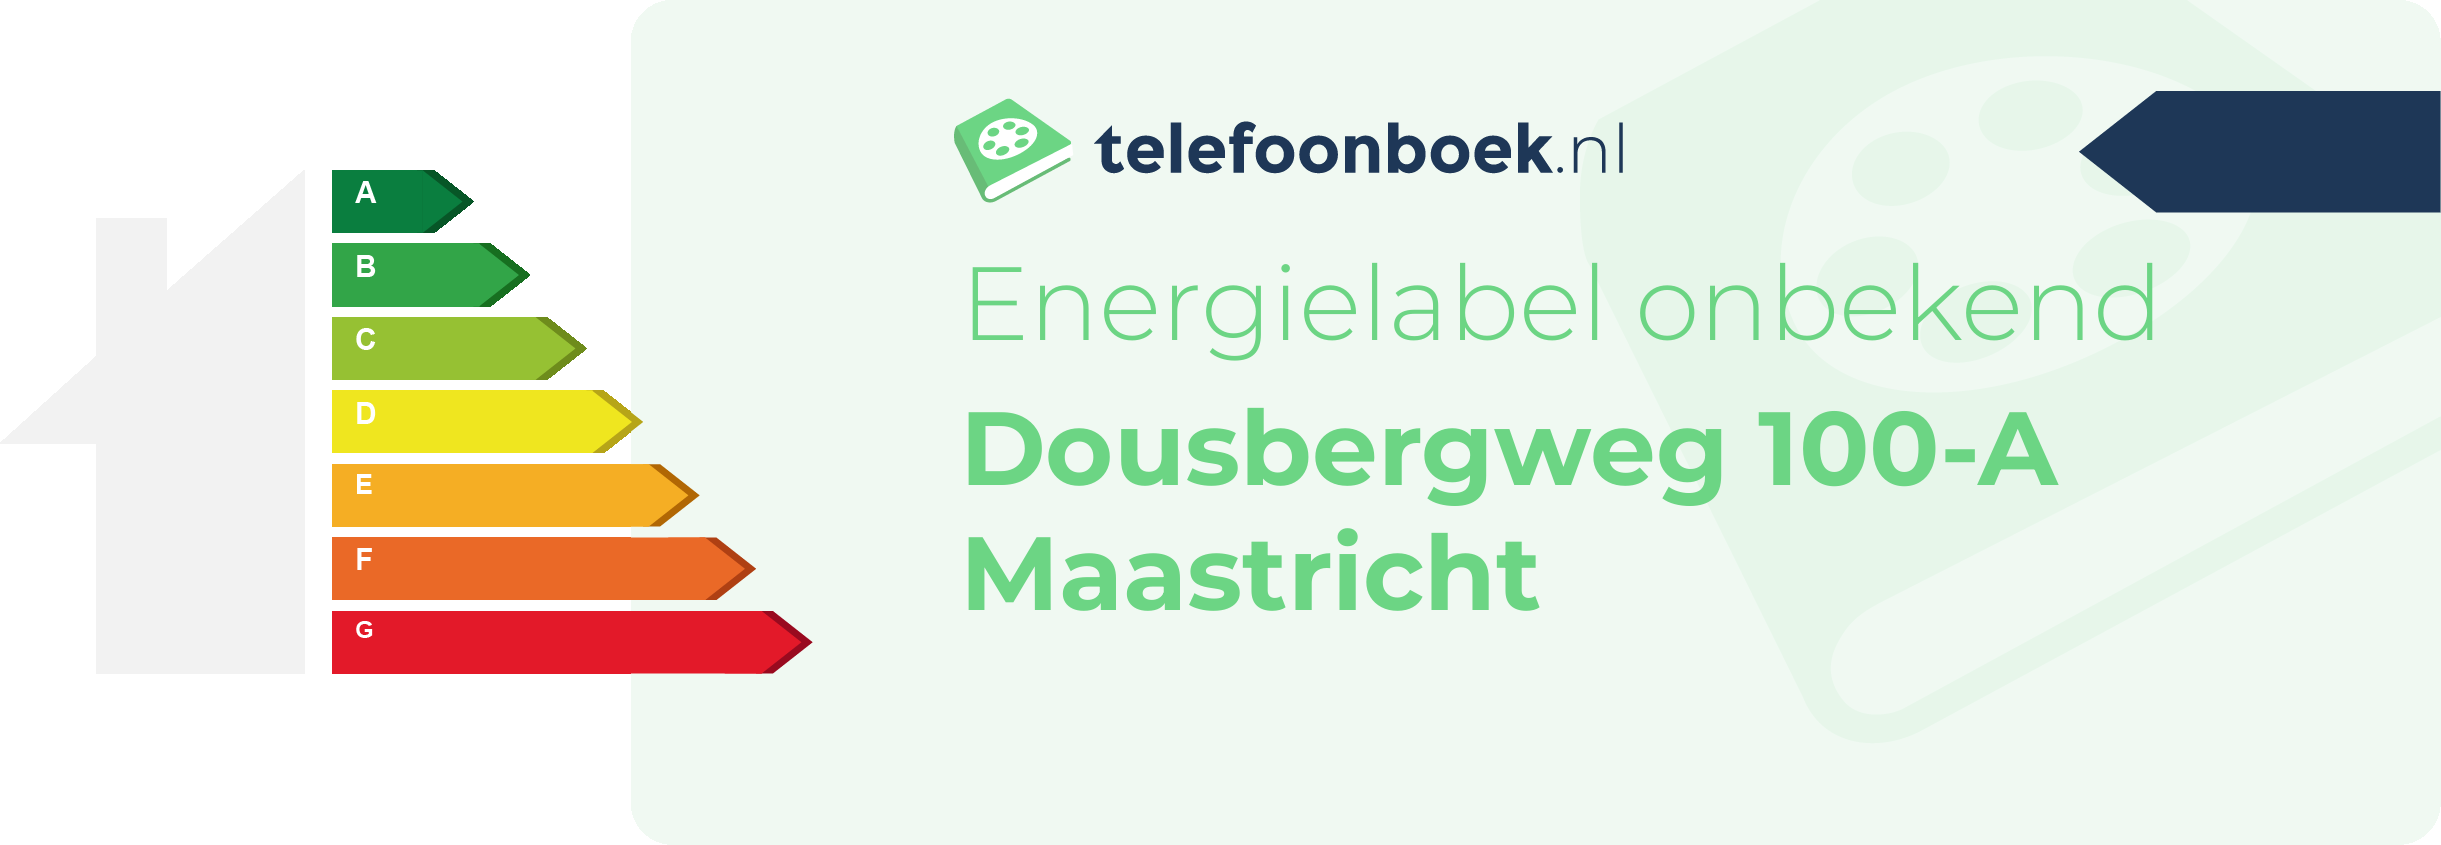 Energielabel Dousbergweg 100-A Maastricht